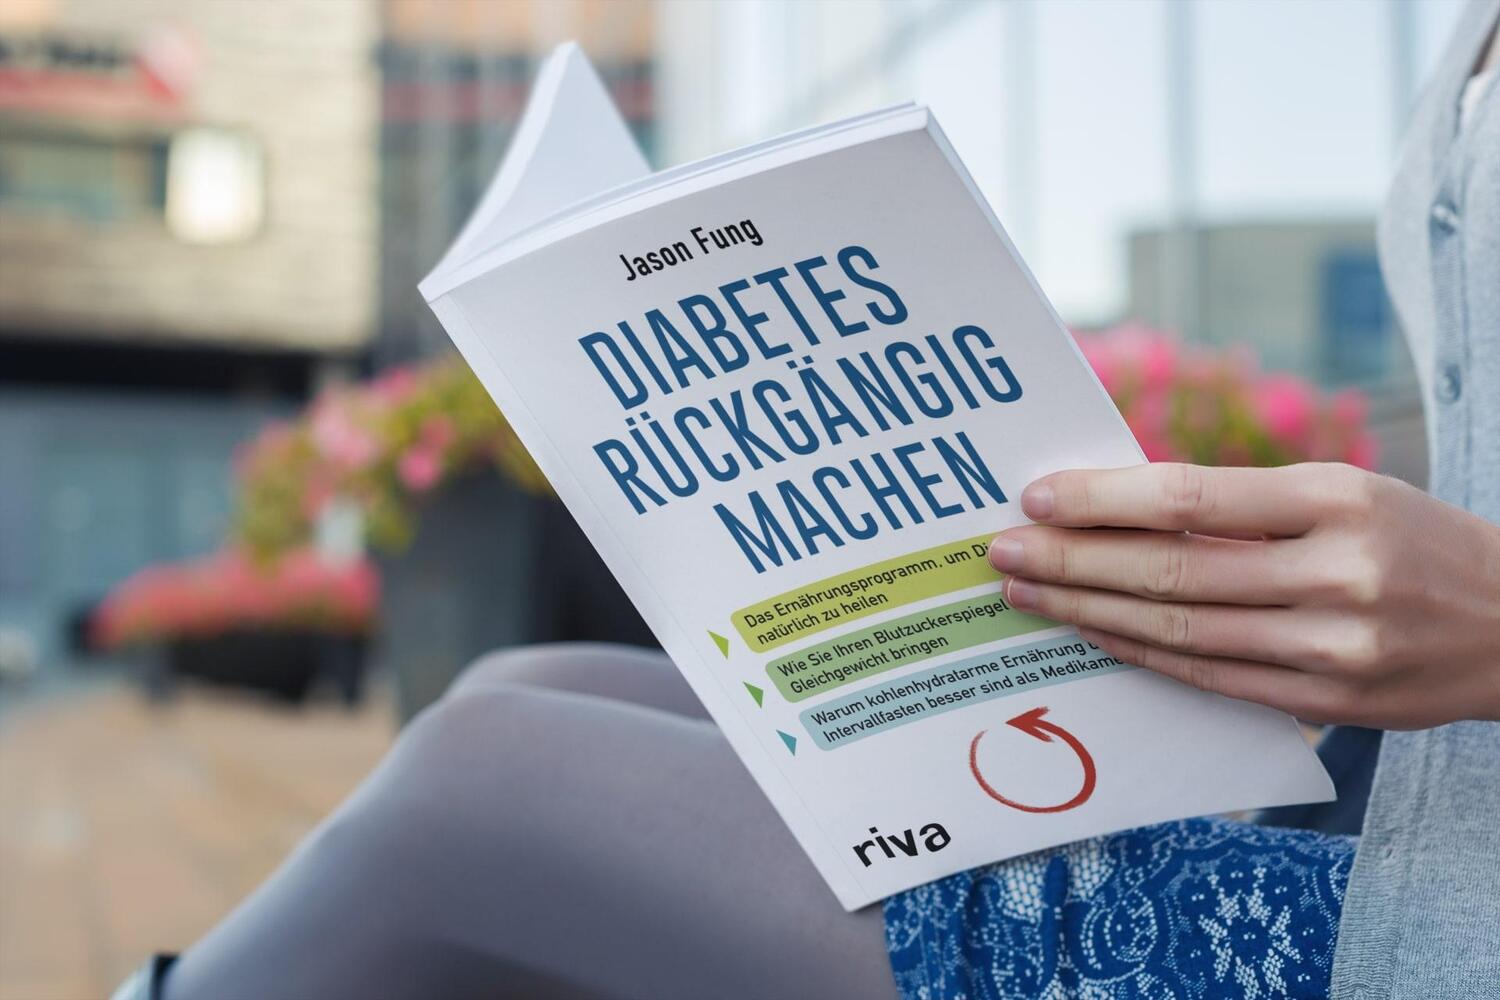 Bild: 9783742306494 | Diabetes rückgängig machen | Jason Fung | Taschenbuch | Deutsch | 2018